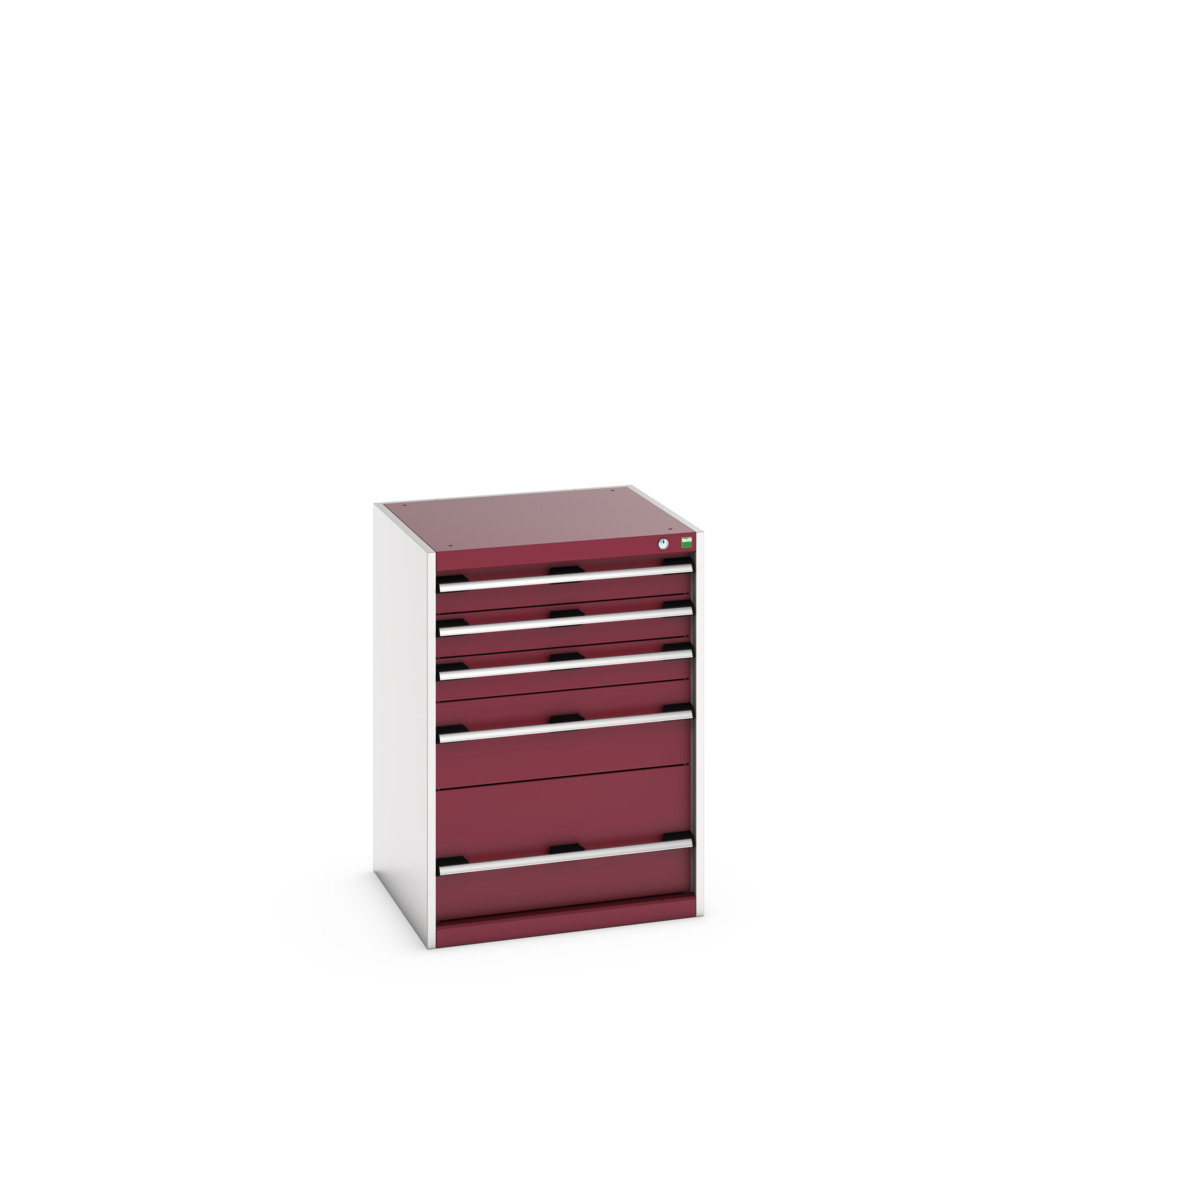 40019045.24V - cubio drawer cabinet